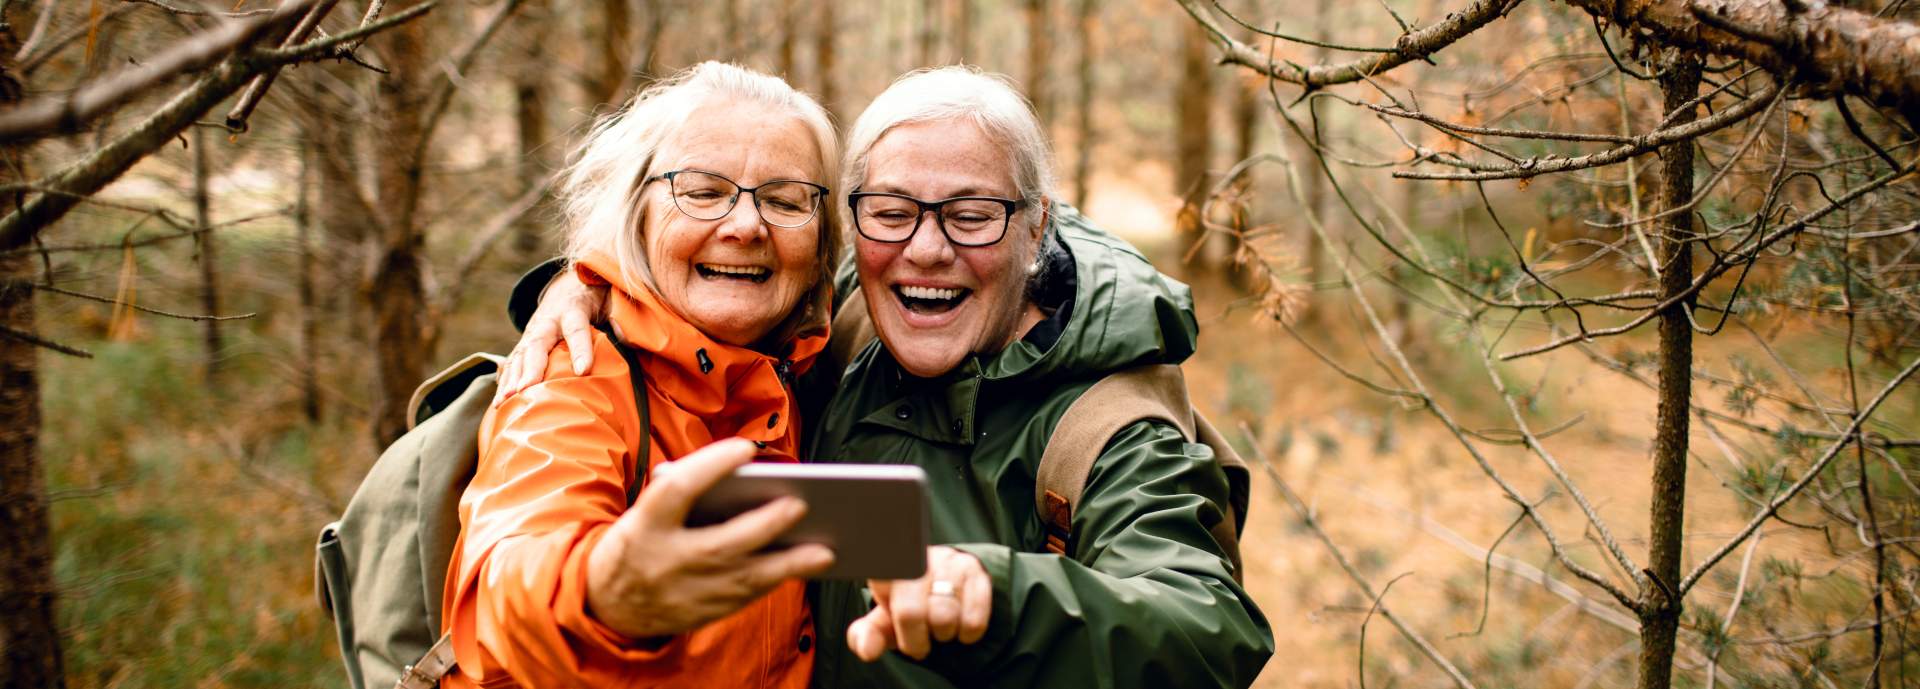 older women takins selfie in wood